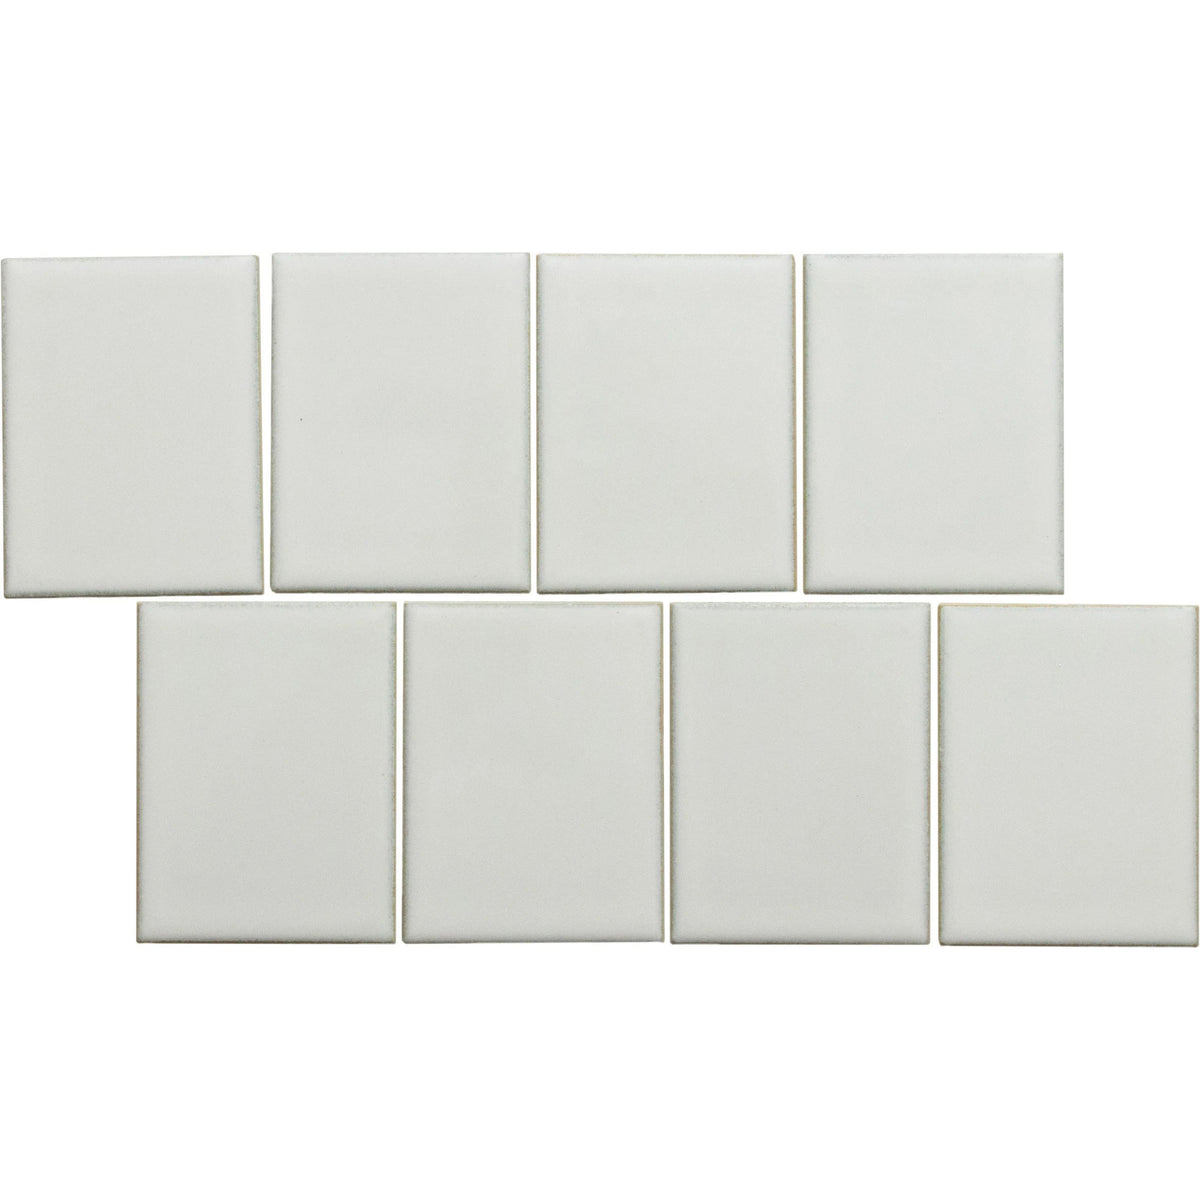 Emser Tile - Cuadro - 9 in. x 14 in. Glazed Porcelain Mosaic - White